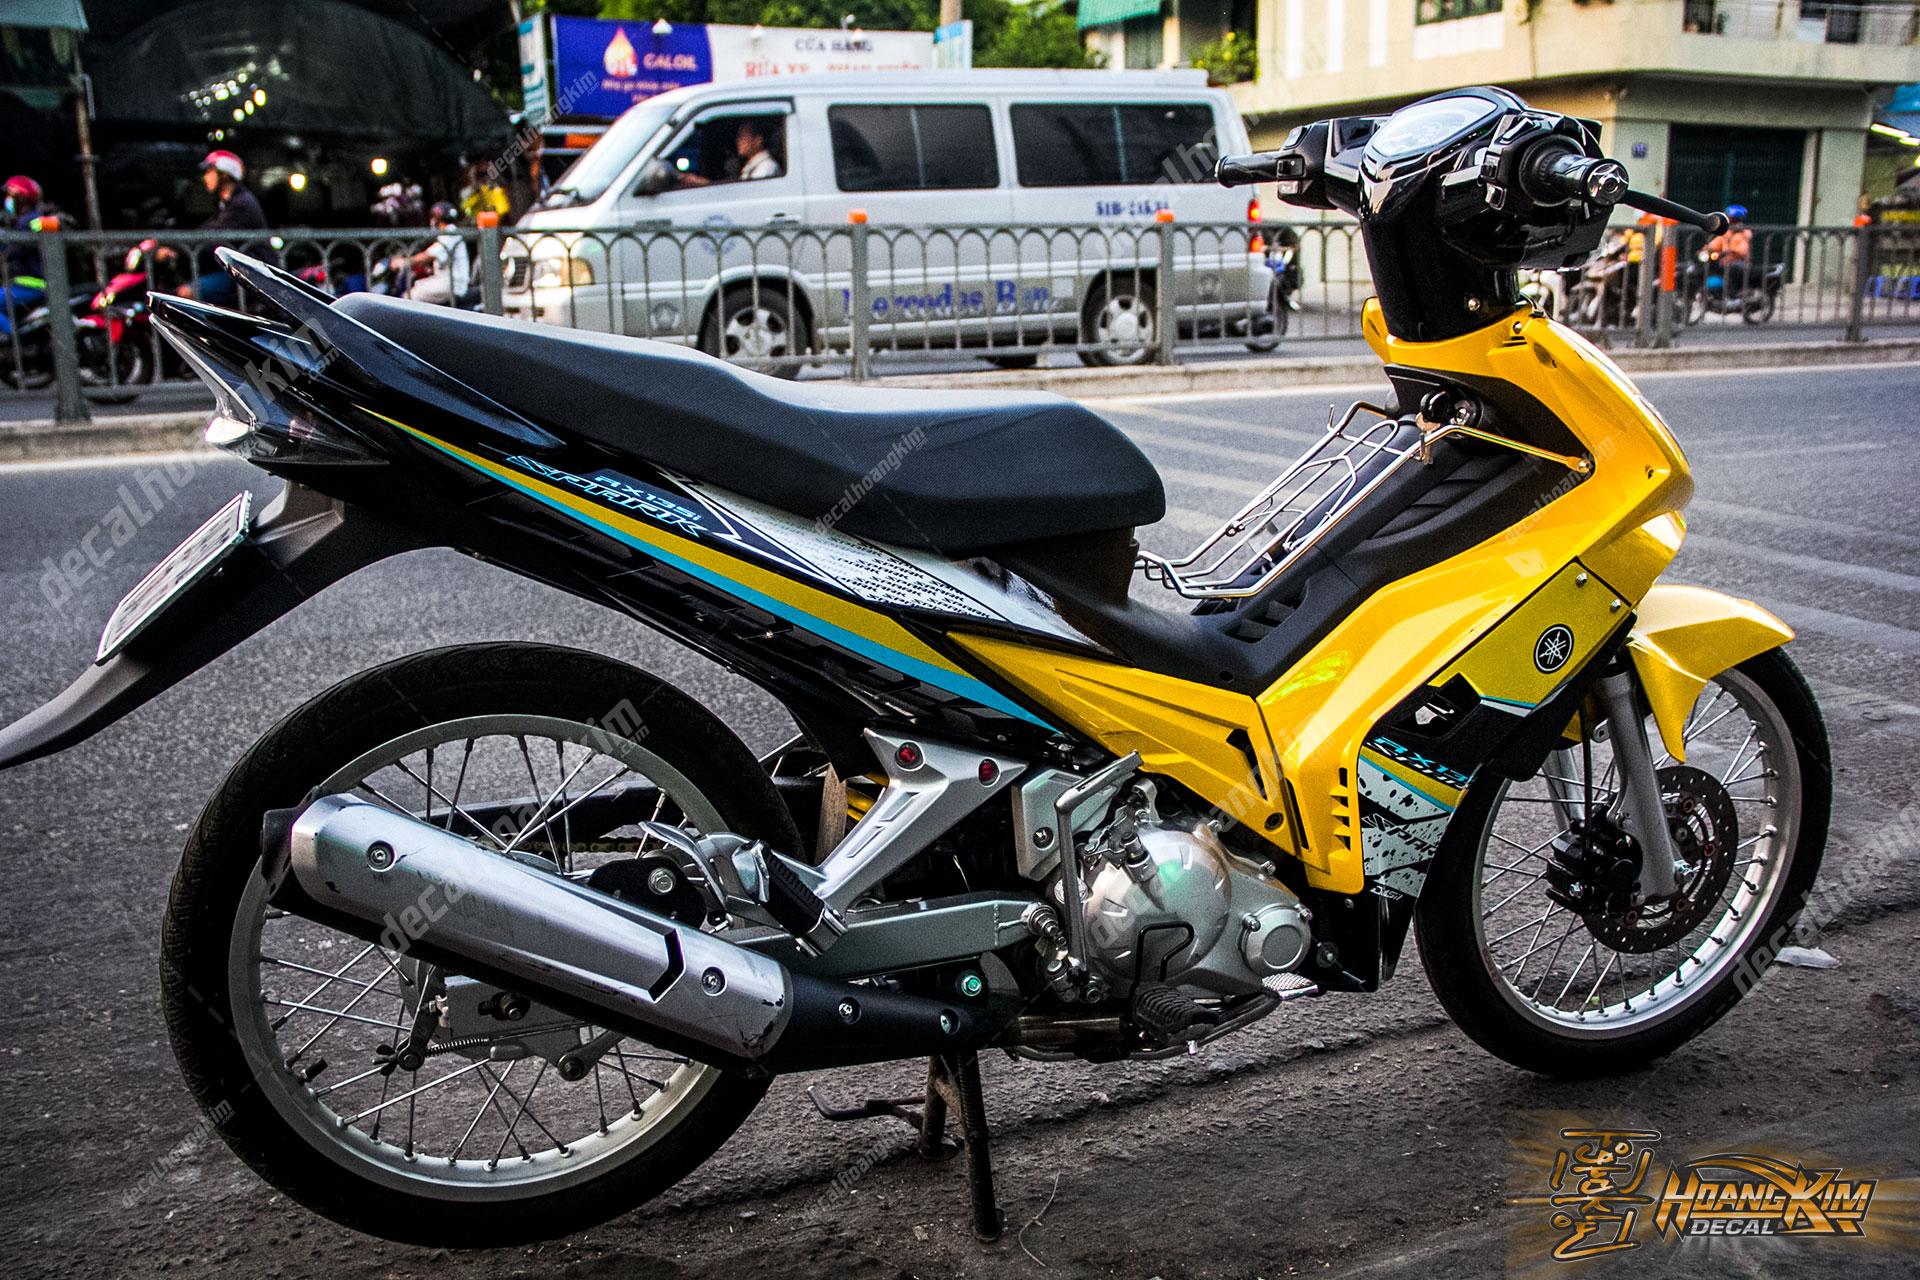 Giá bán Exciter 135cc Spark RX135i nhập Thái Lan 66 triệu tại Việt Nam   4 Thì